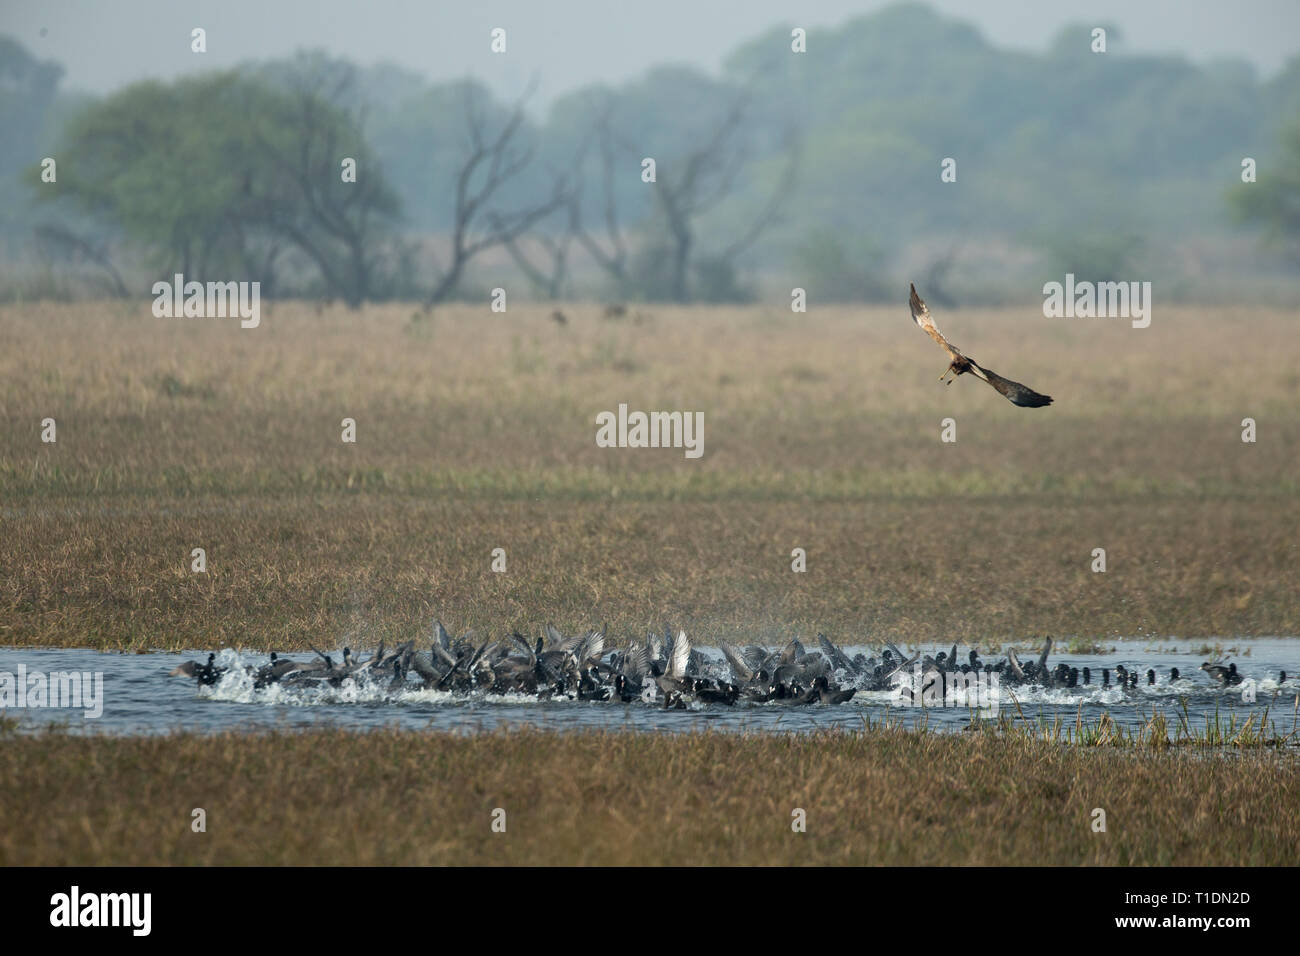 Le busard pour aller à des proies d'oiseaux de Bharatpur, Rajasthan, Inde Banque D'Images